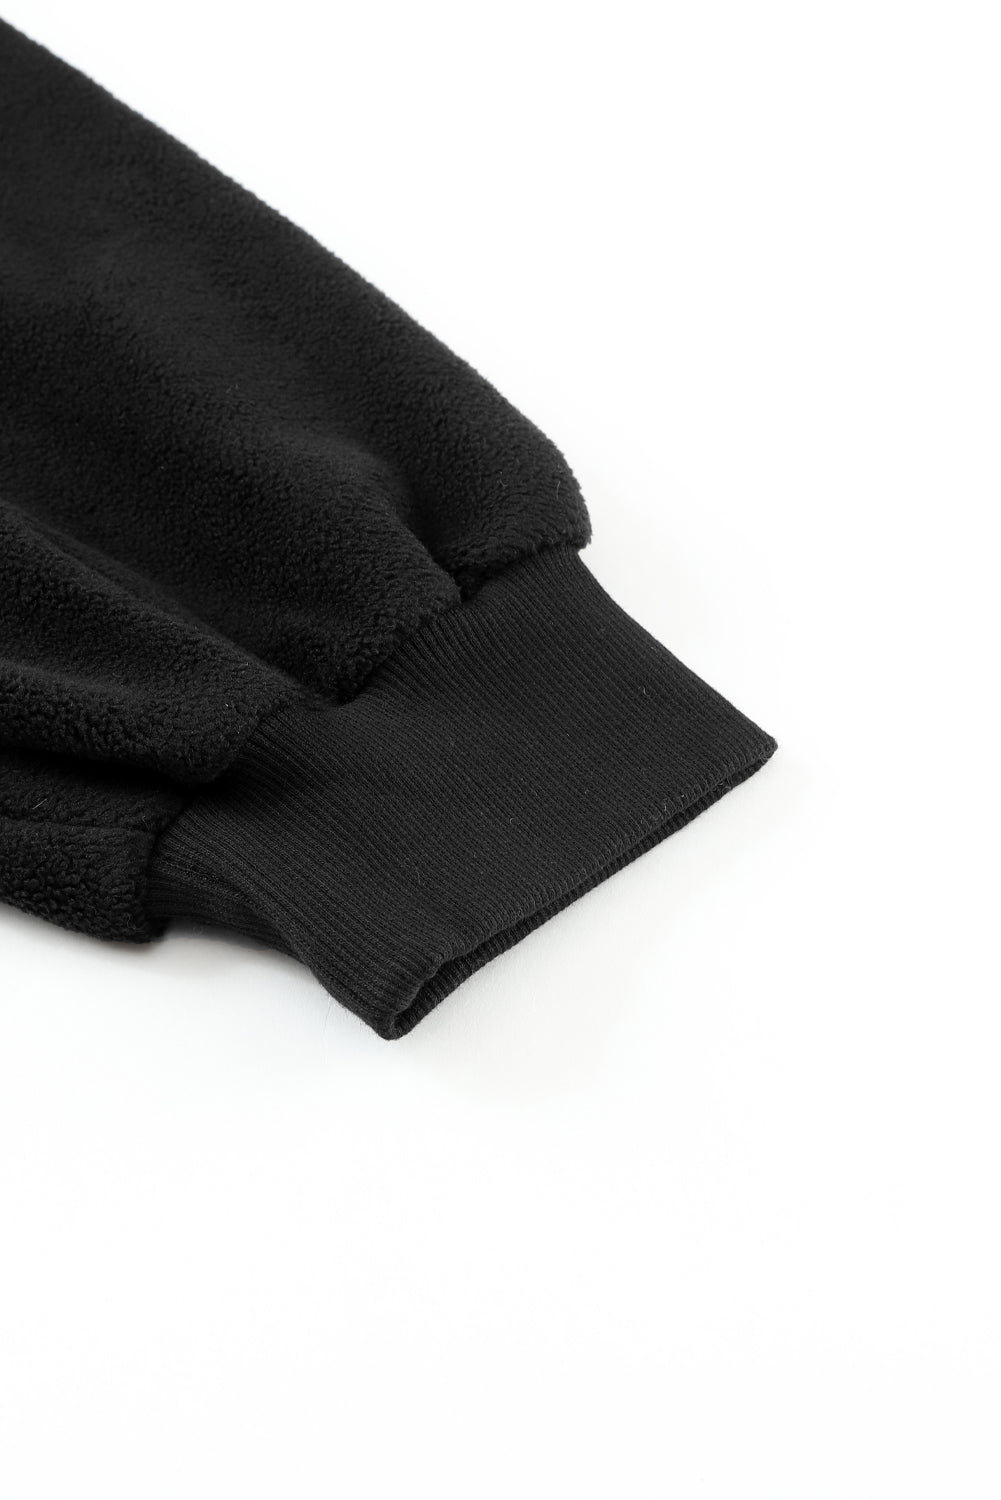 Black Bishop Sleeve Zip Up Hoodie Jacket with Flap Pockets